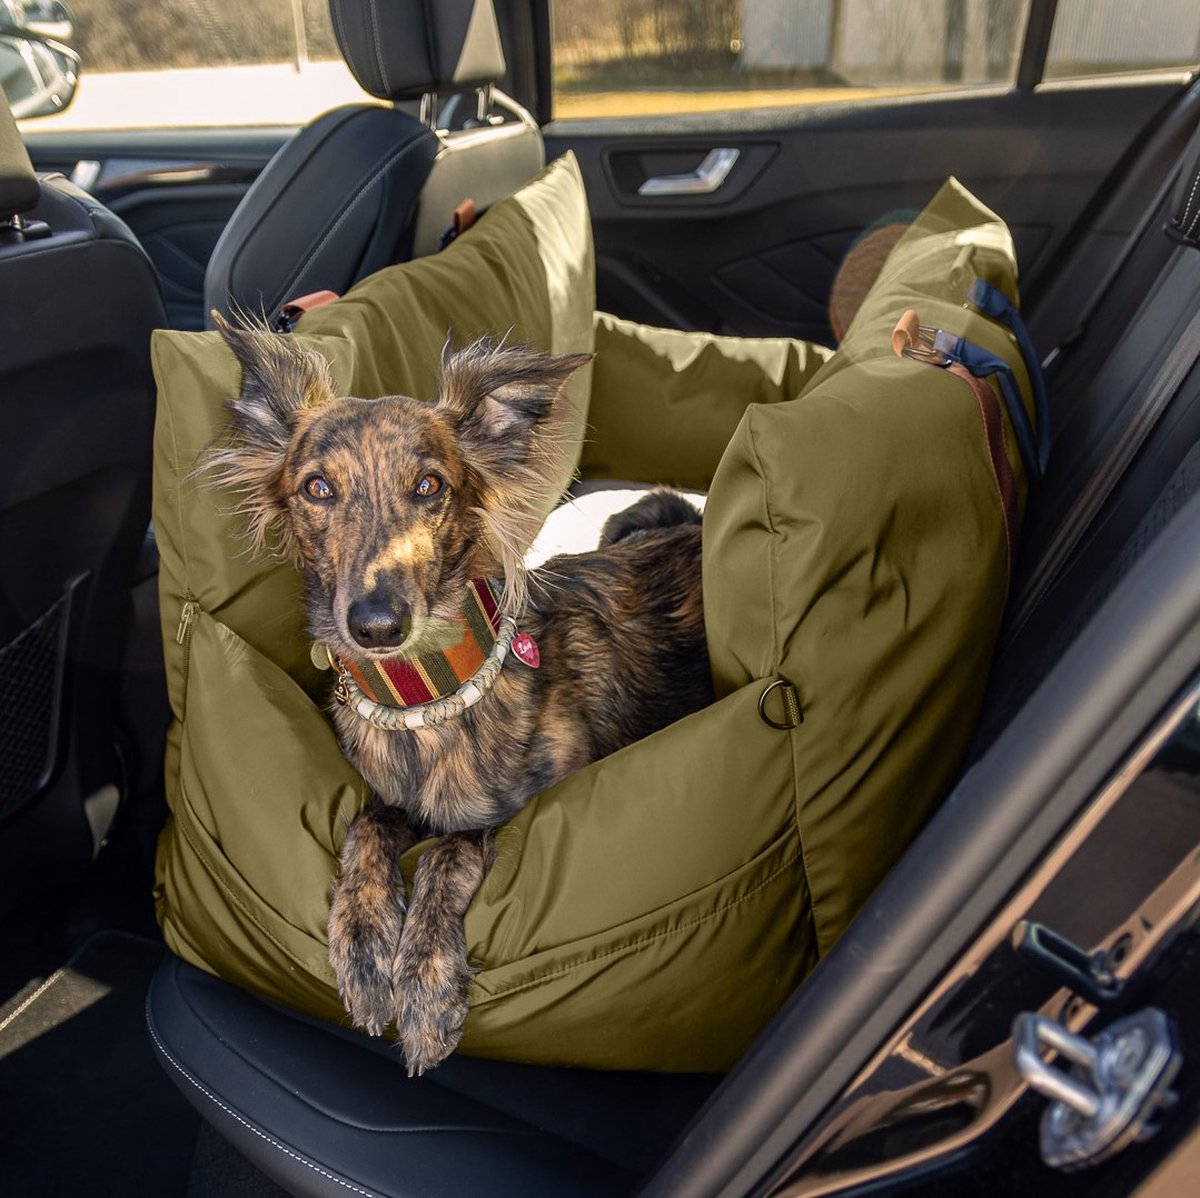 L'élianne ® : Siège auto de Luxe pour grand Chiens - Lit pour chien XL - Siège  auto